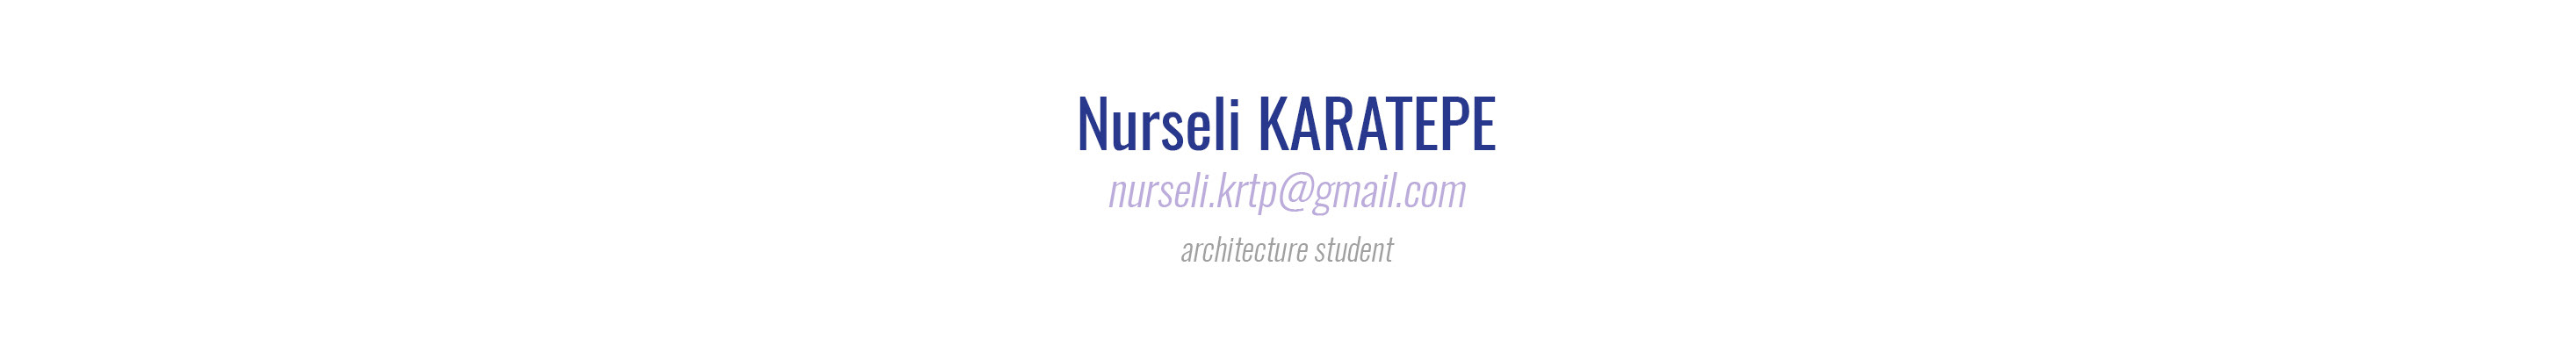 Nurseli KARATEPE's profile banner